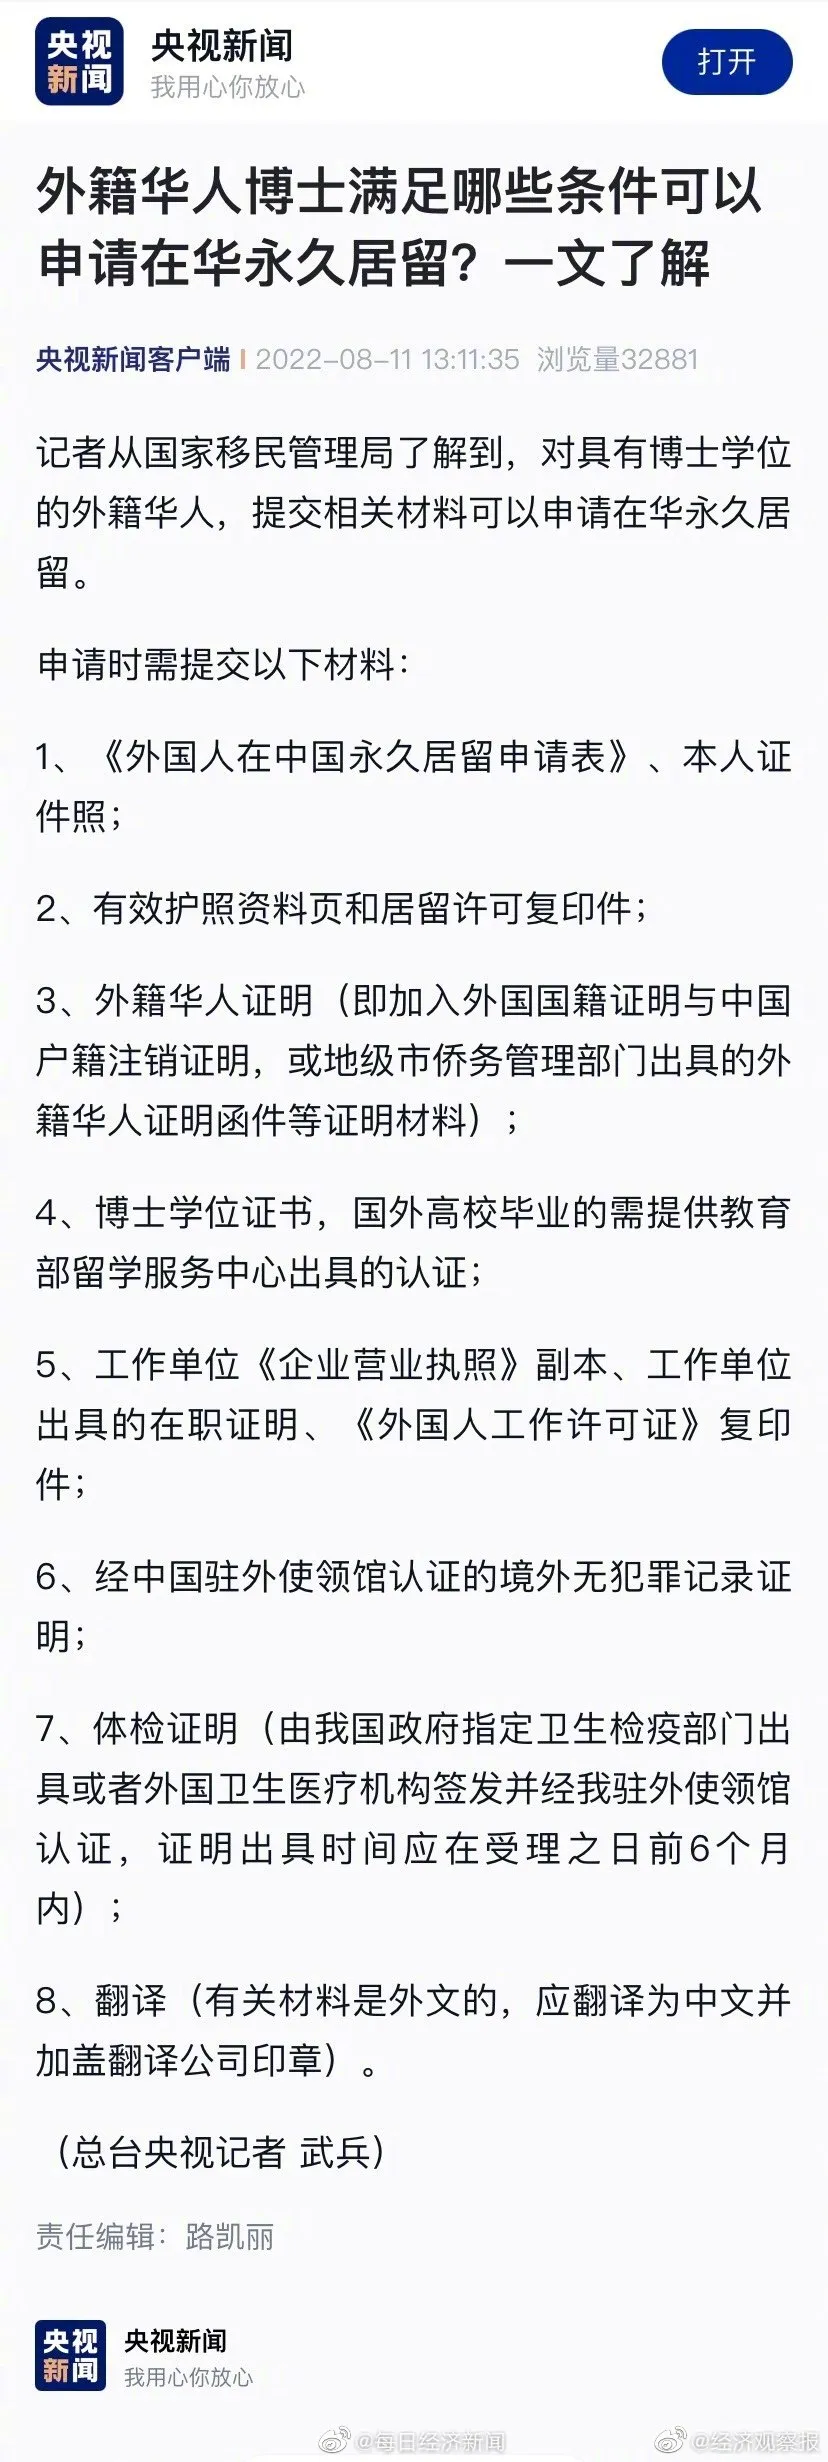 外籍华人博士可申请在华永久居留 外籍华人博士满足哪些条件可以申请在华永久居留